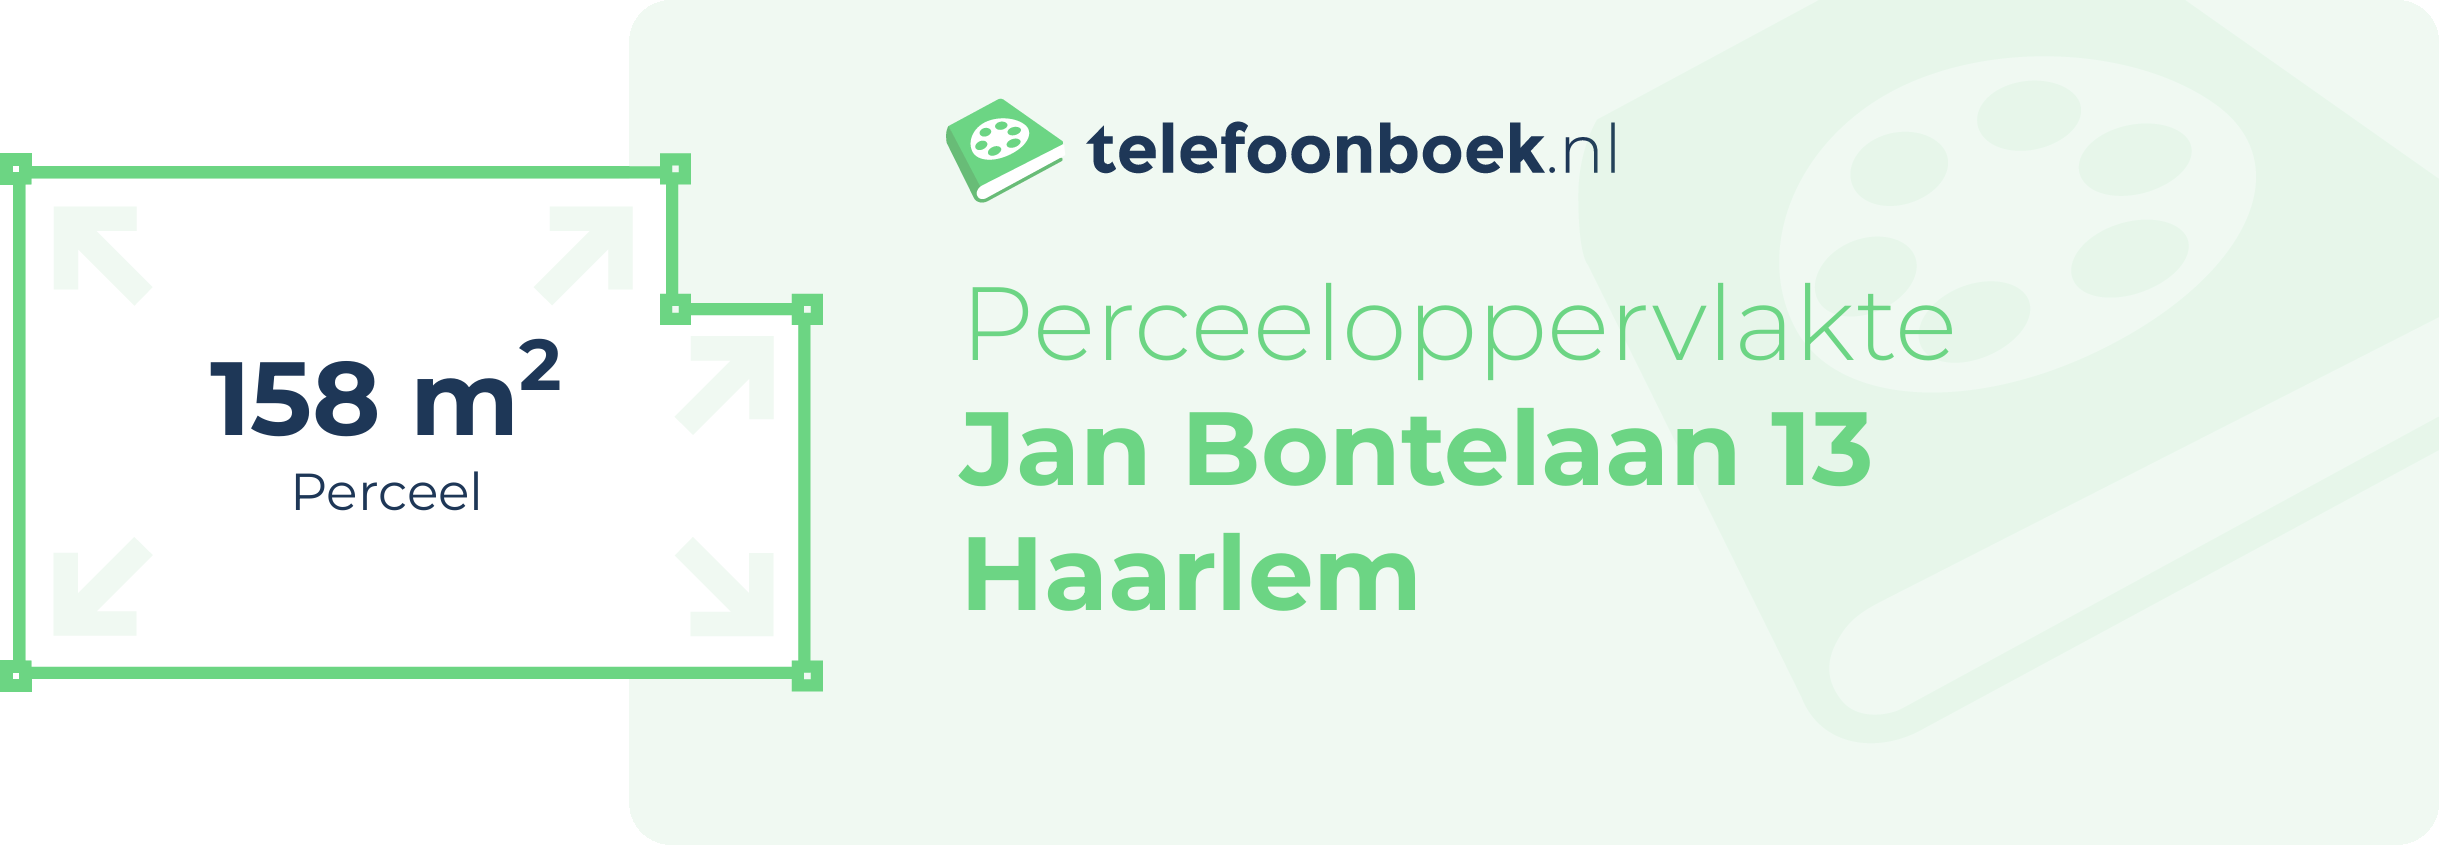 Perceeloppervlakte Jan Bontelaan 13 Haarlem